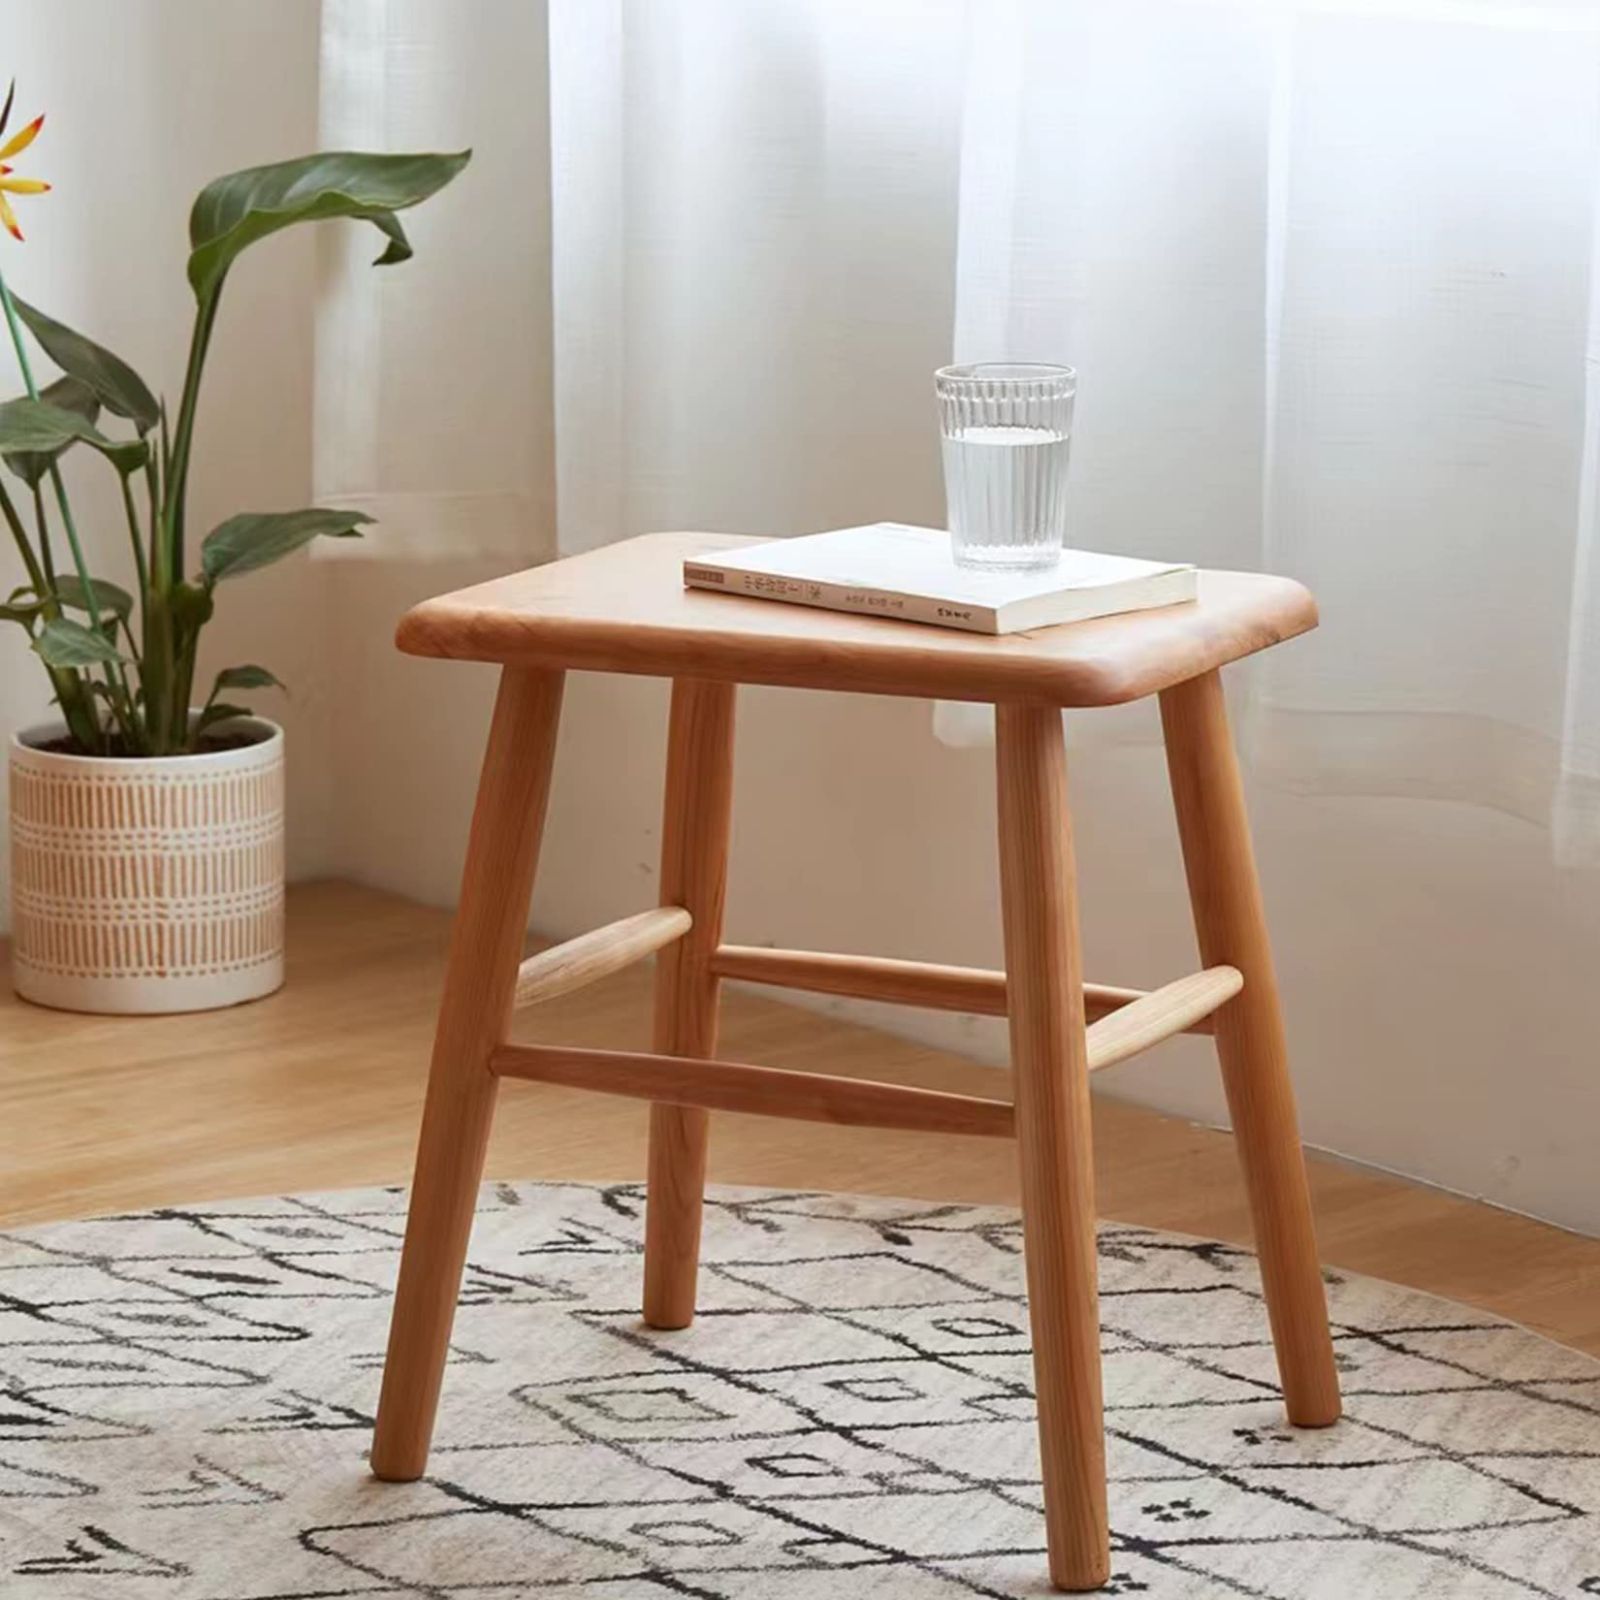 新着商品】MU RONG スツール 木製 椅子 幅40cm×奥行30cm×高さ45cm ...